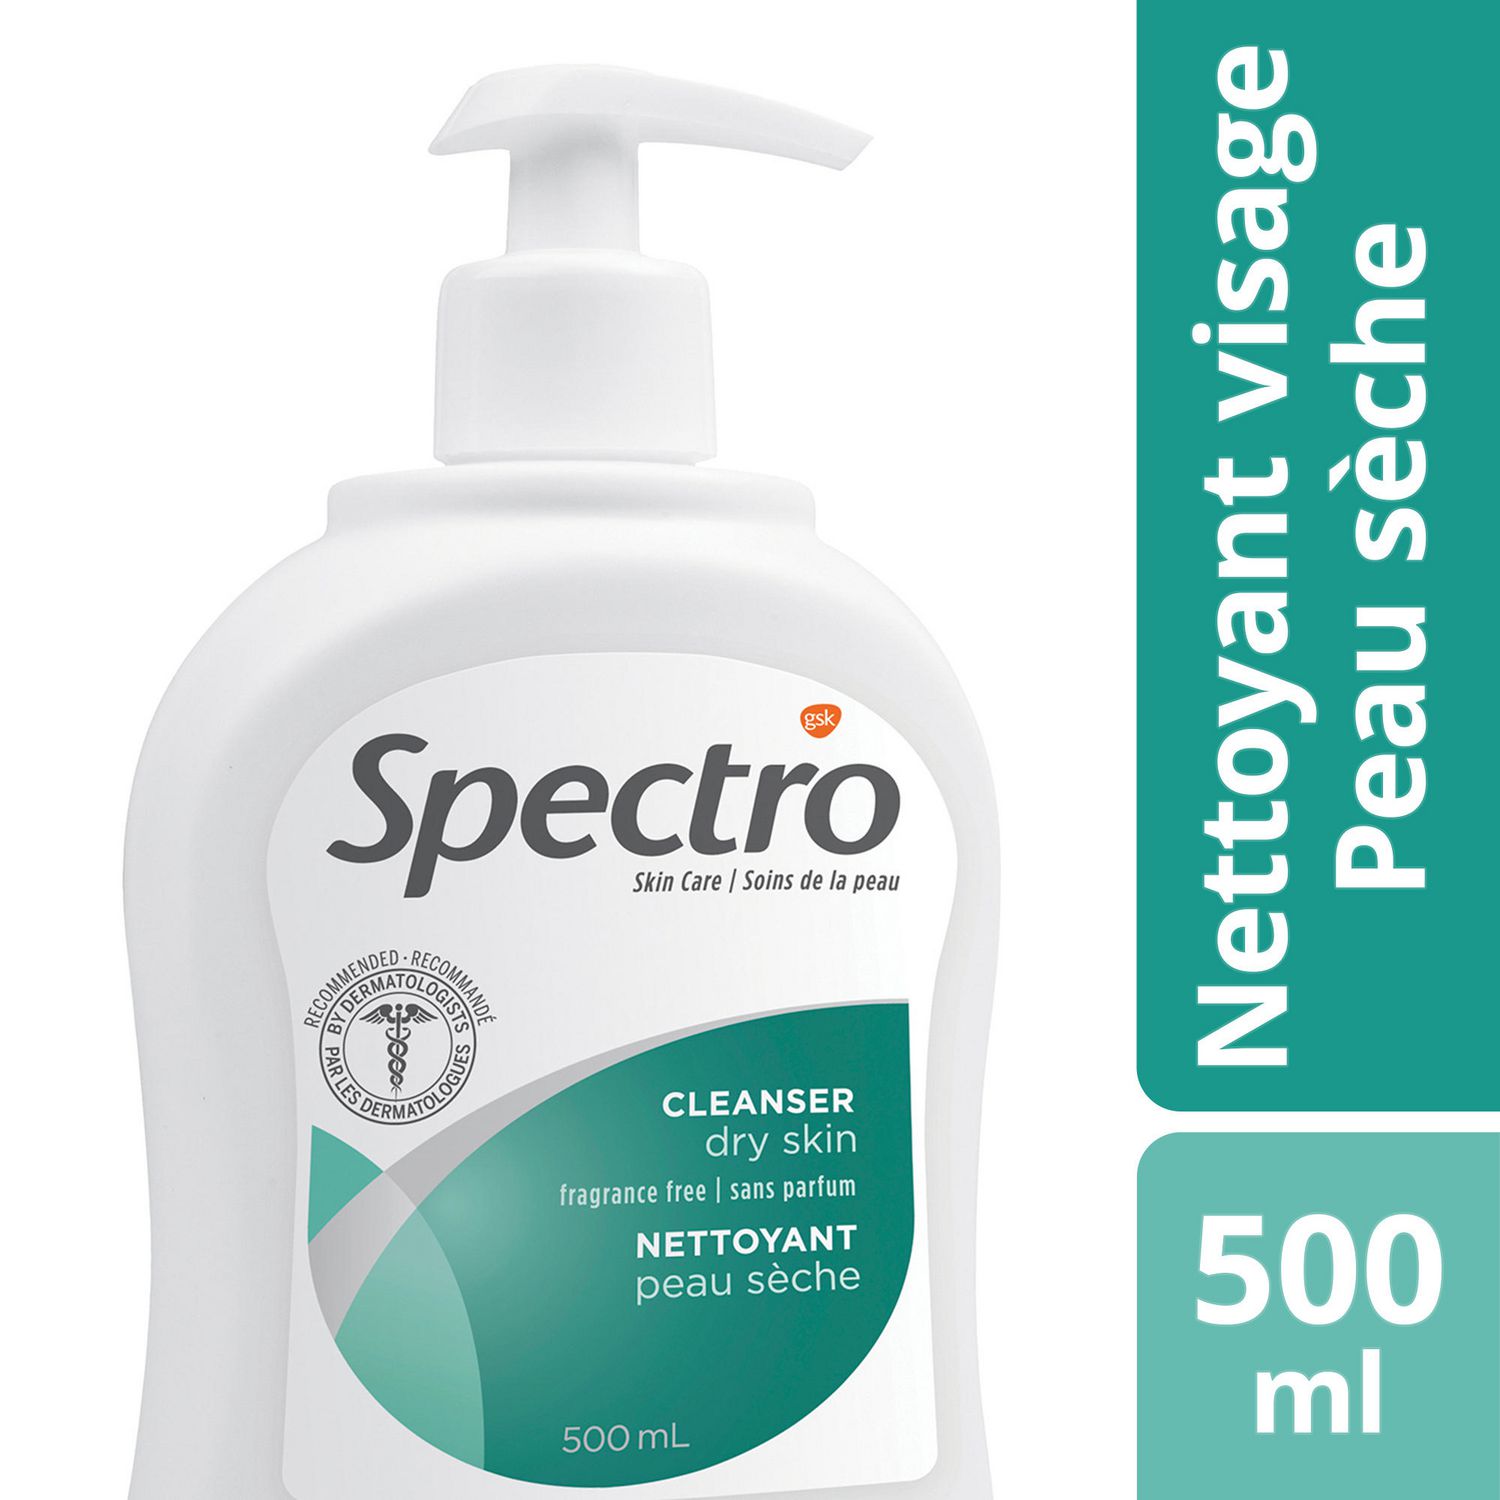 Spectro Jel cLEANSER for DRY Skin Fragrance Free 200 ml (6.75 fl oz) Pump